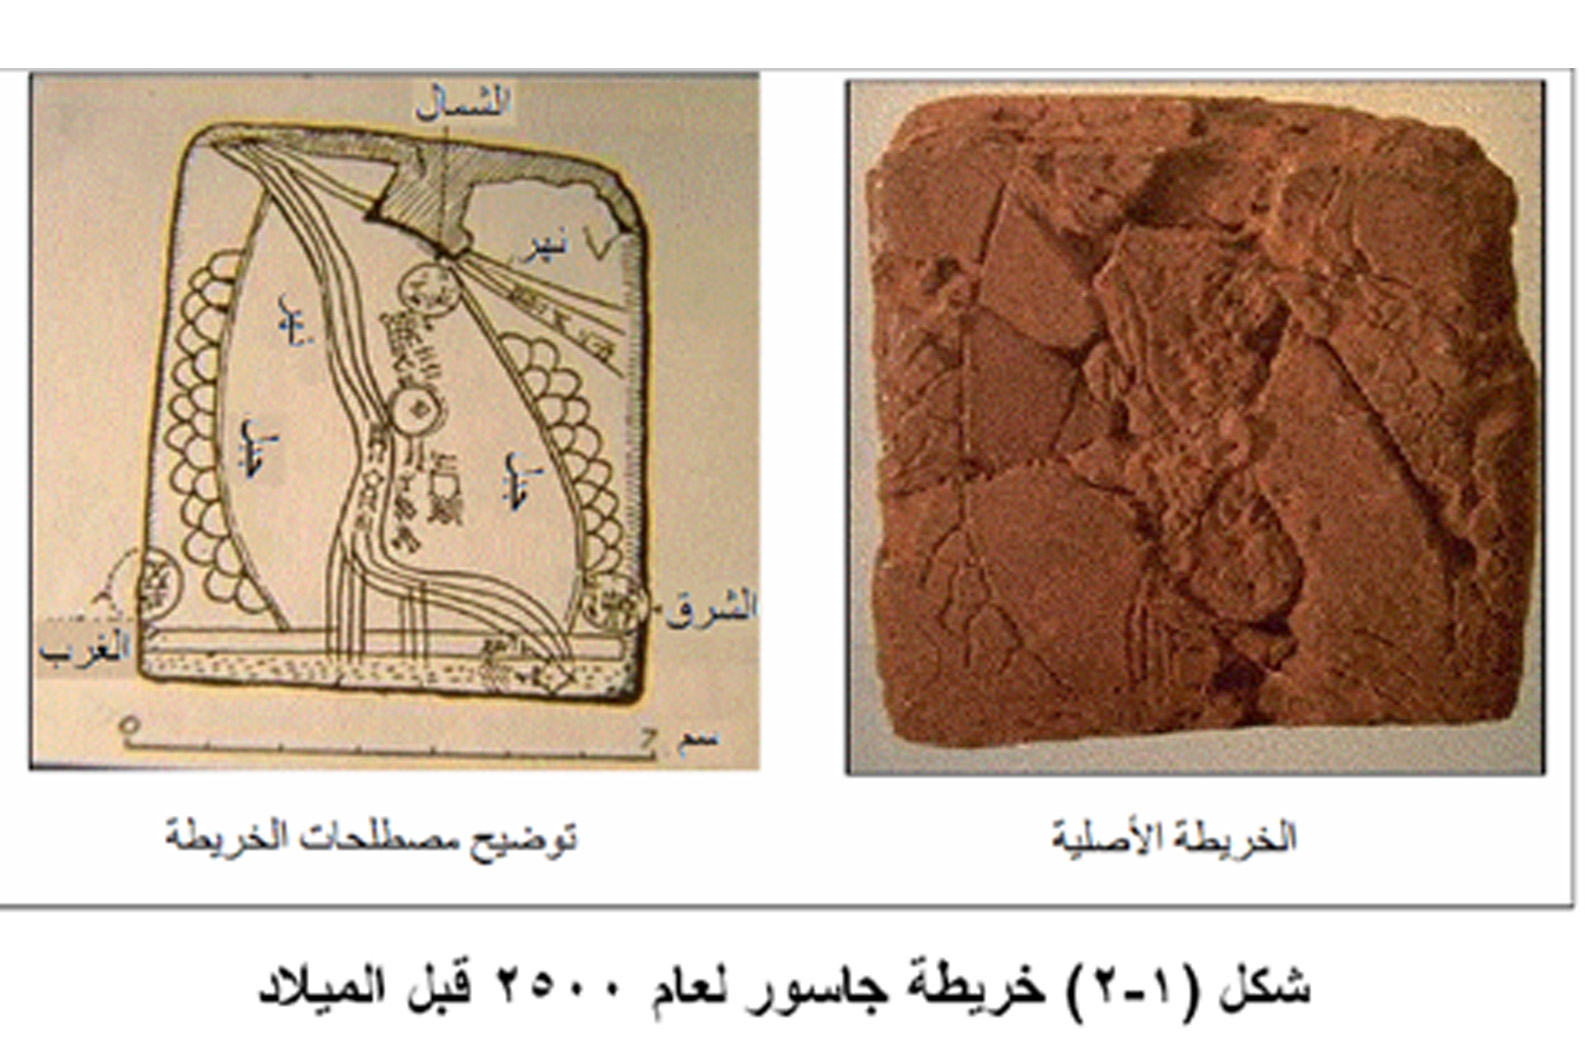 اول من رسم الخرائط هم البابليون في العراق